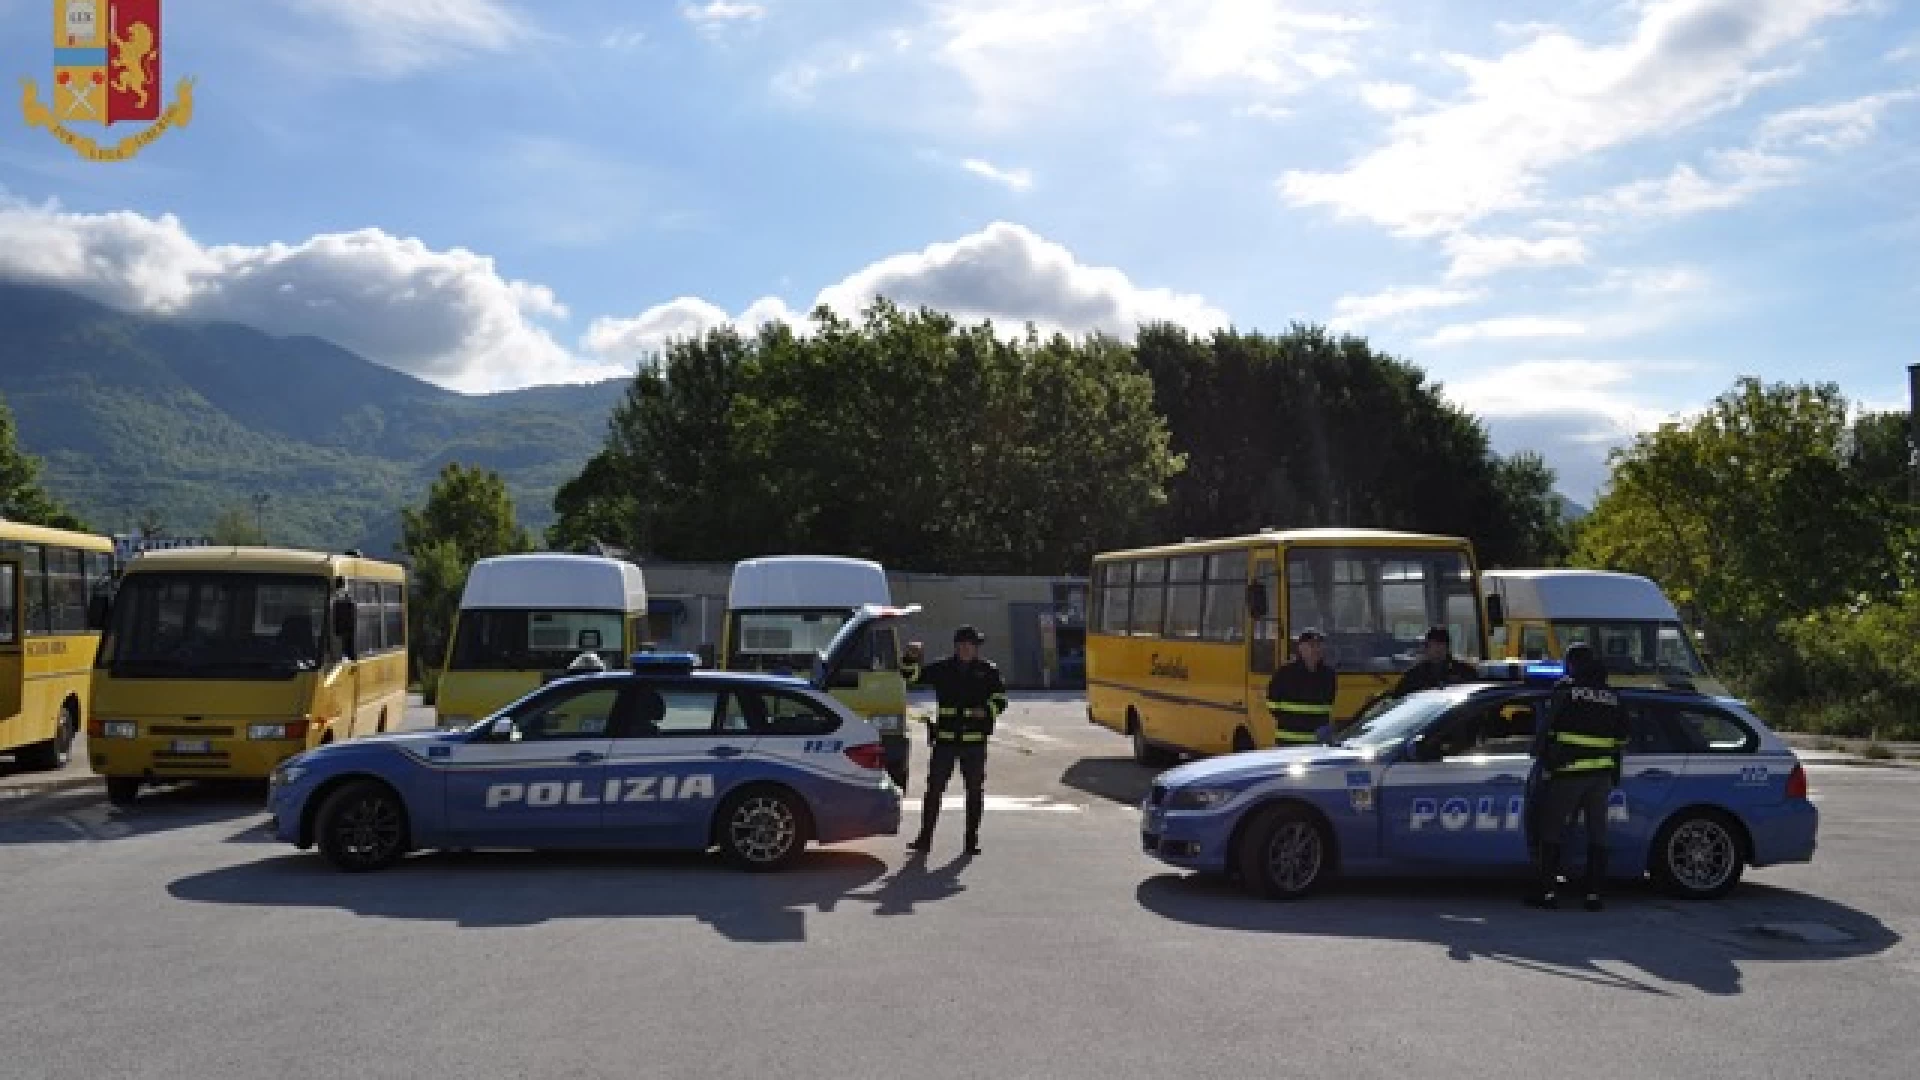 Isernia: la Polizia effettua ancora controlli sugli scuolabus e altri mezzi di trasporto collettivo di studenti. Guarda il video.